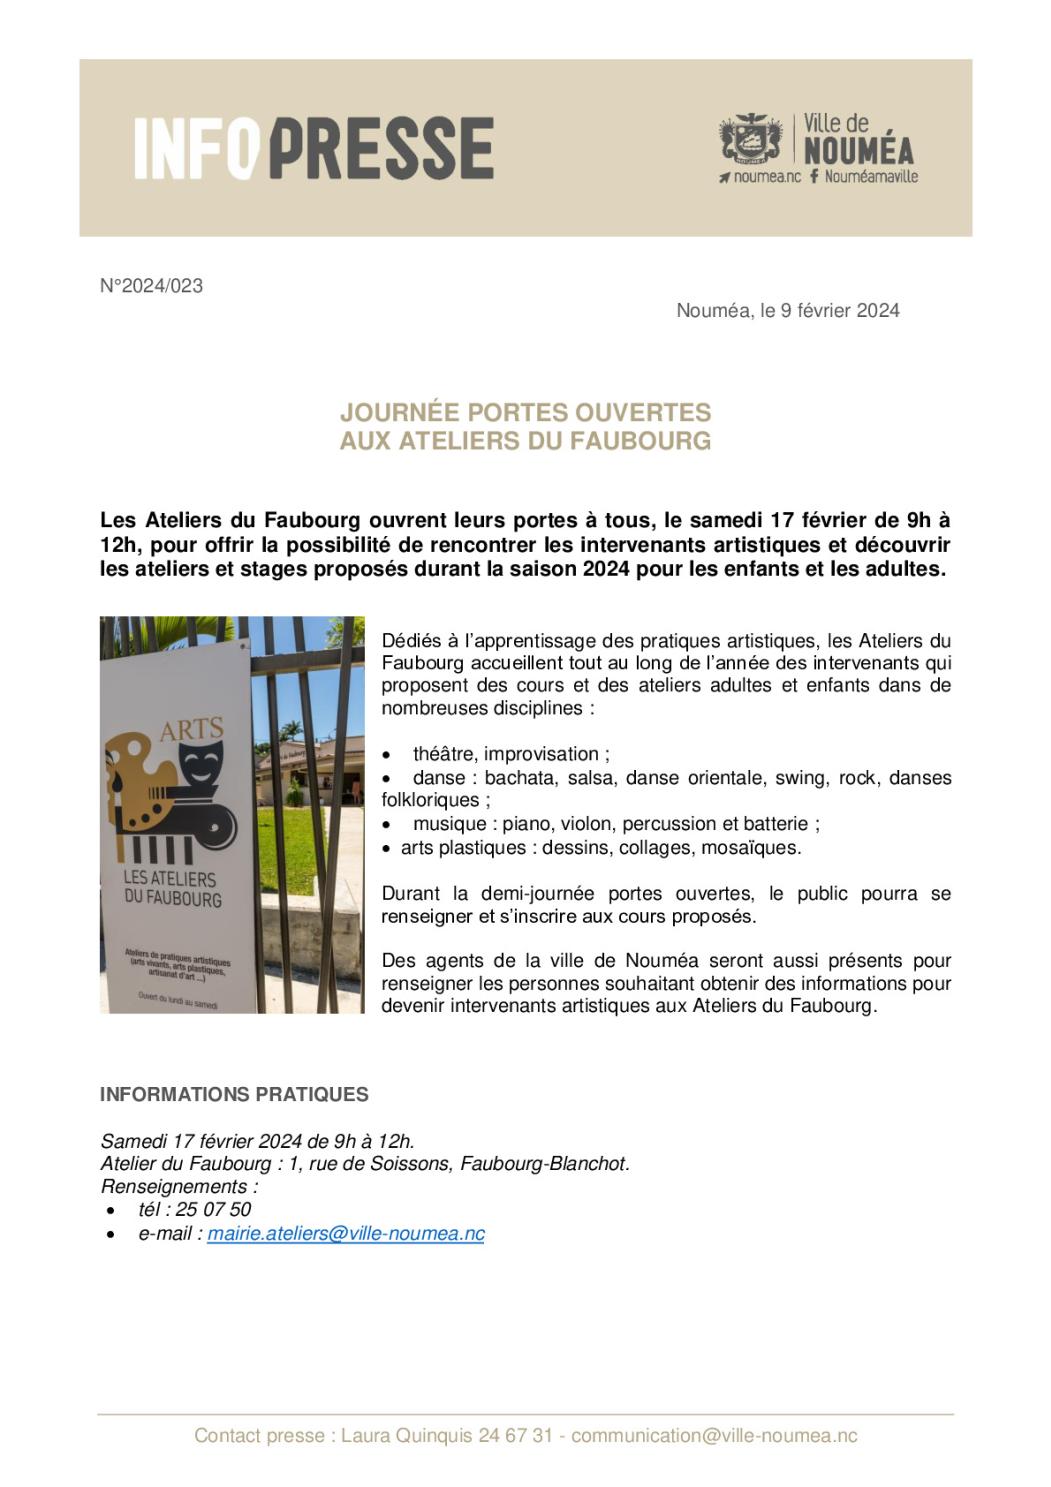 023 IP Journée portes ouvertes Ateliers du Faubourg 1702.pdf